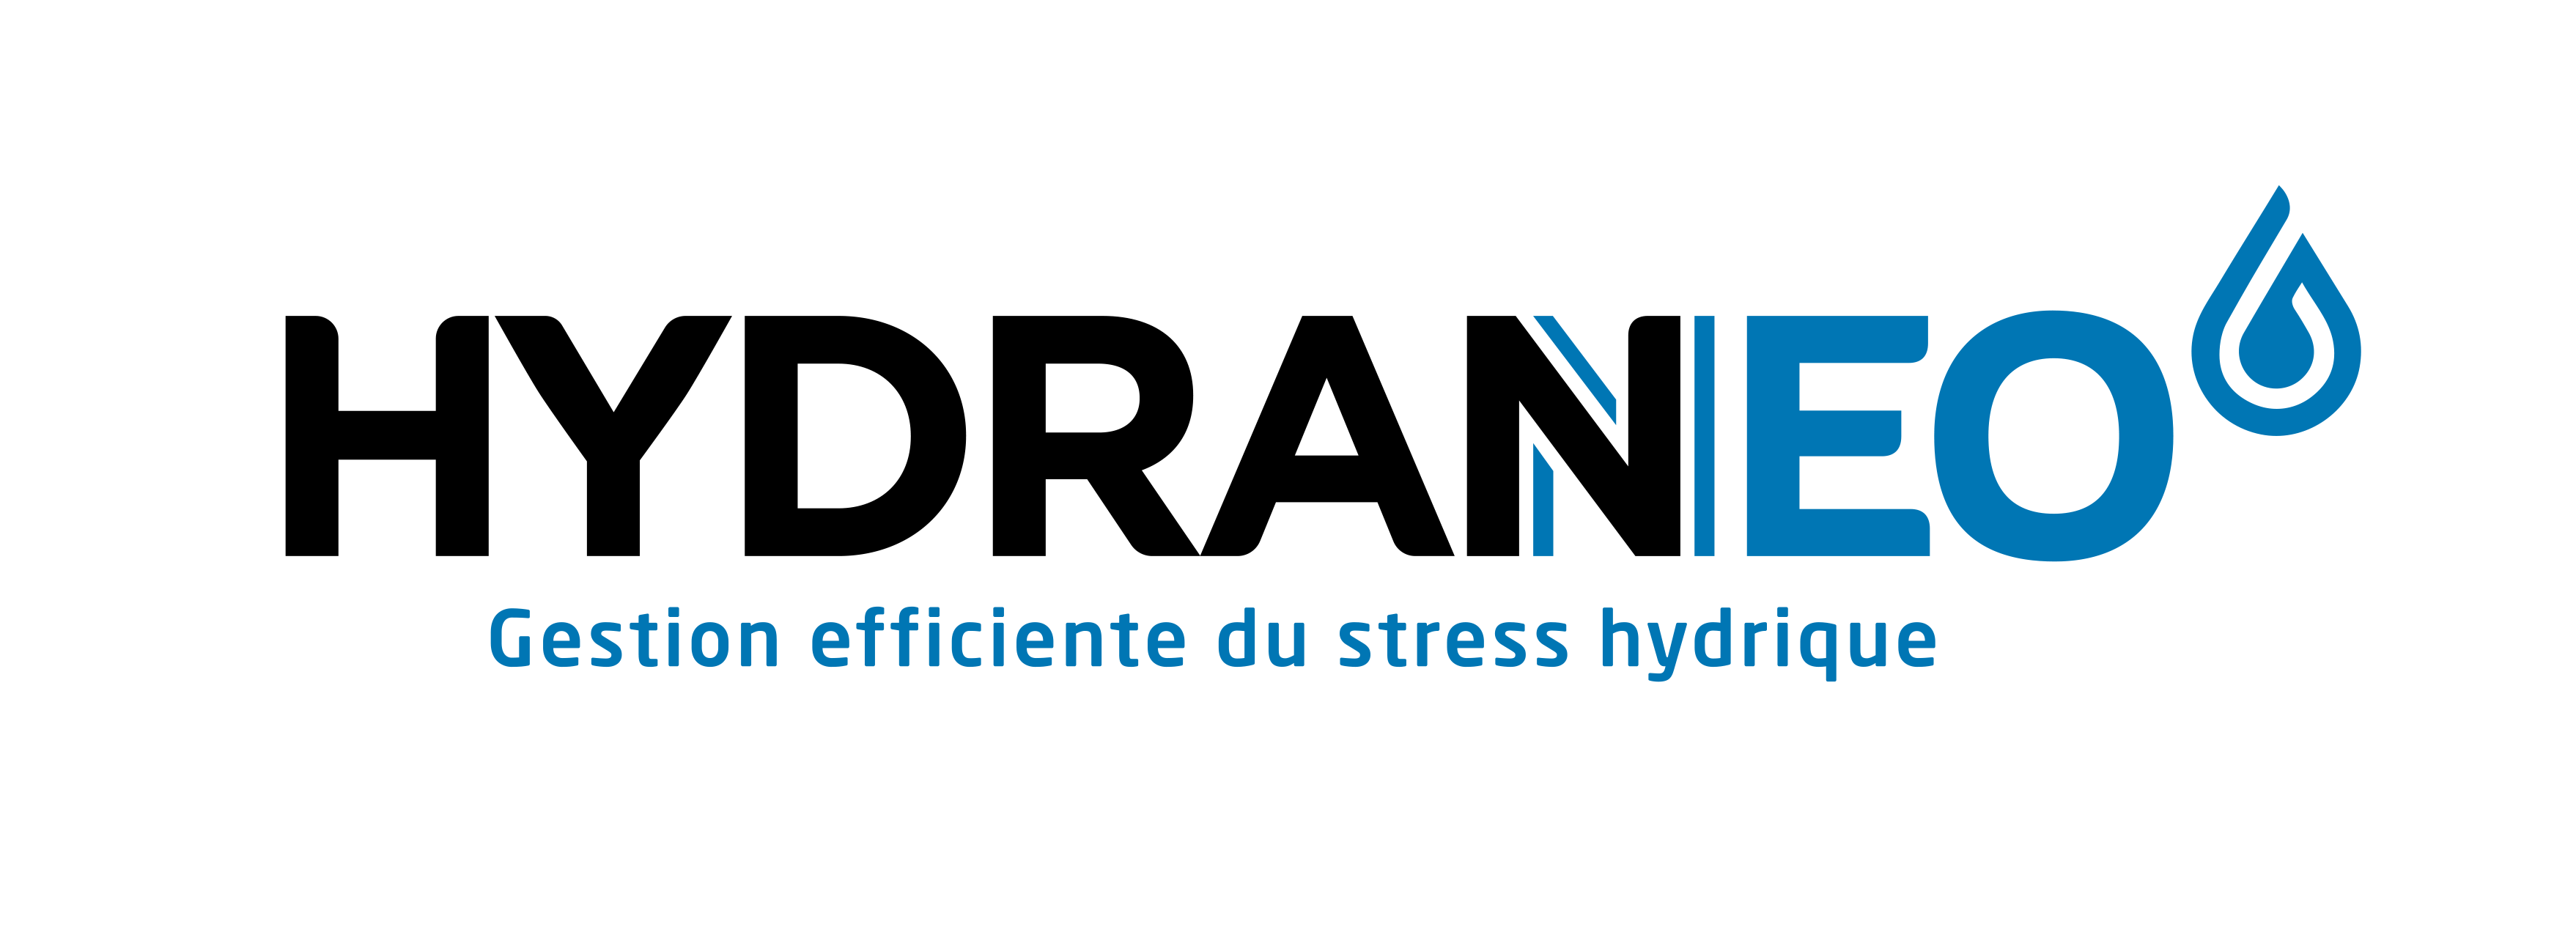 Variété HYDRANEO (gestion efficiente du stress hydrique)